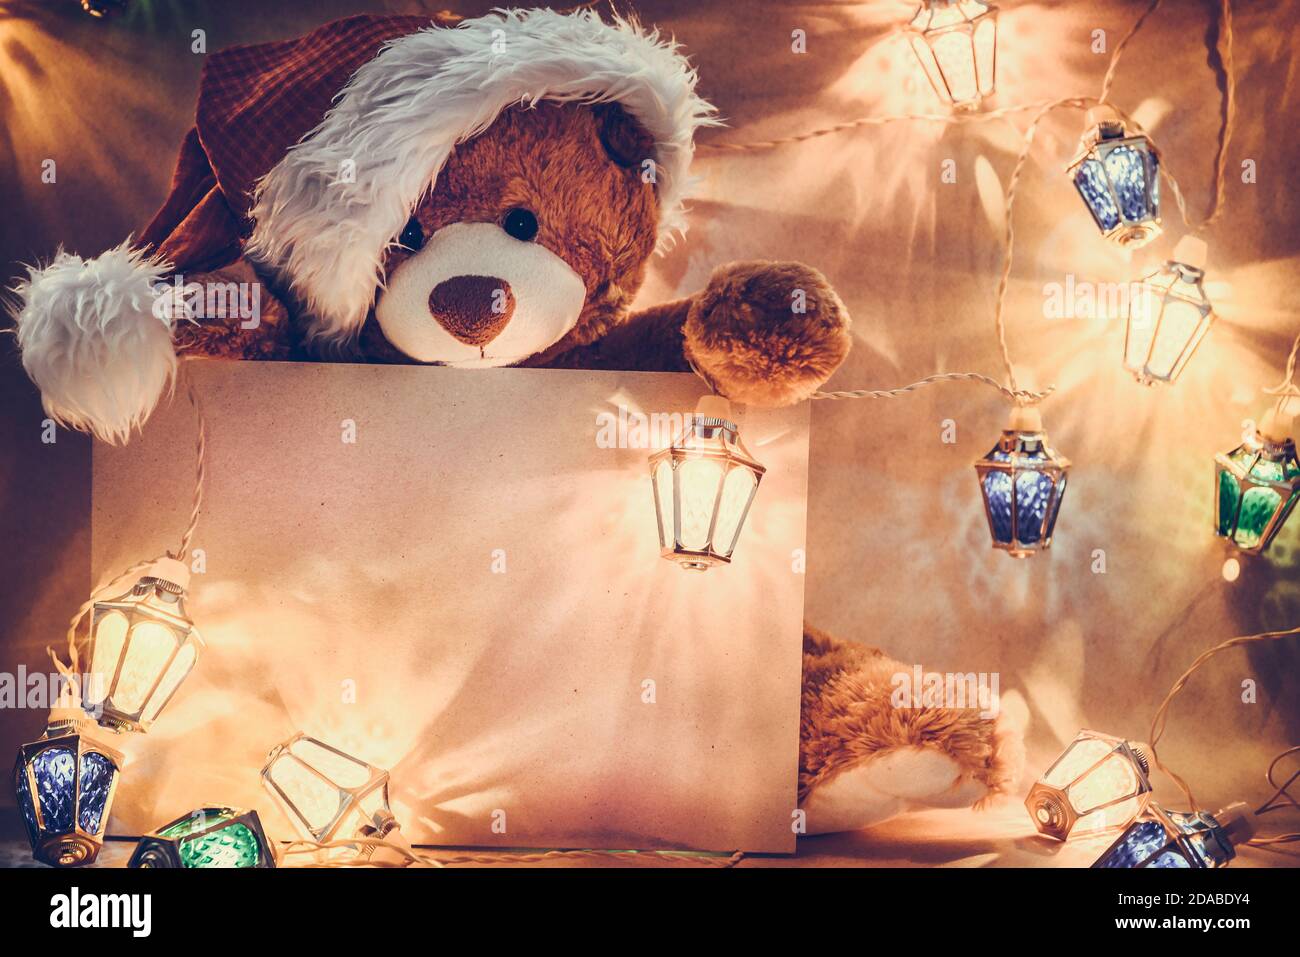 Cartolina di Natale con i regali dell'orso di Teddy e la ghirlanda delle luci della fata. Foto Stock